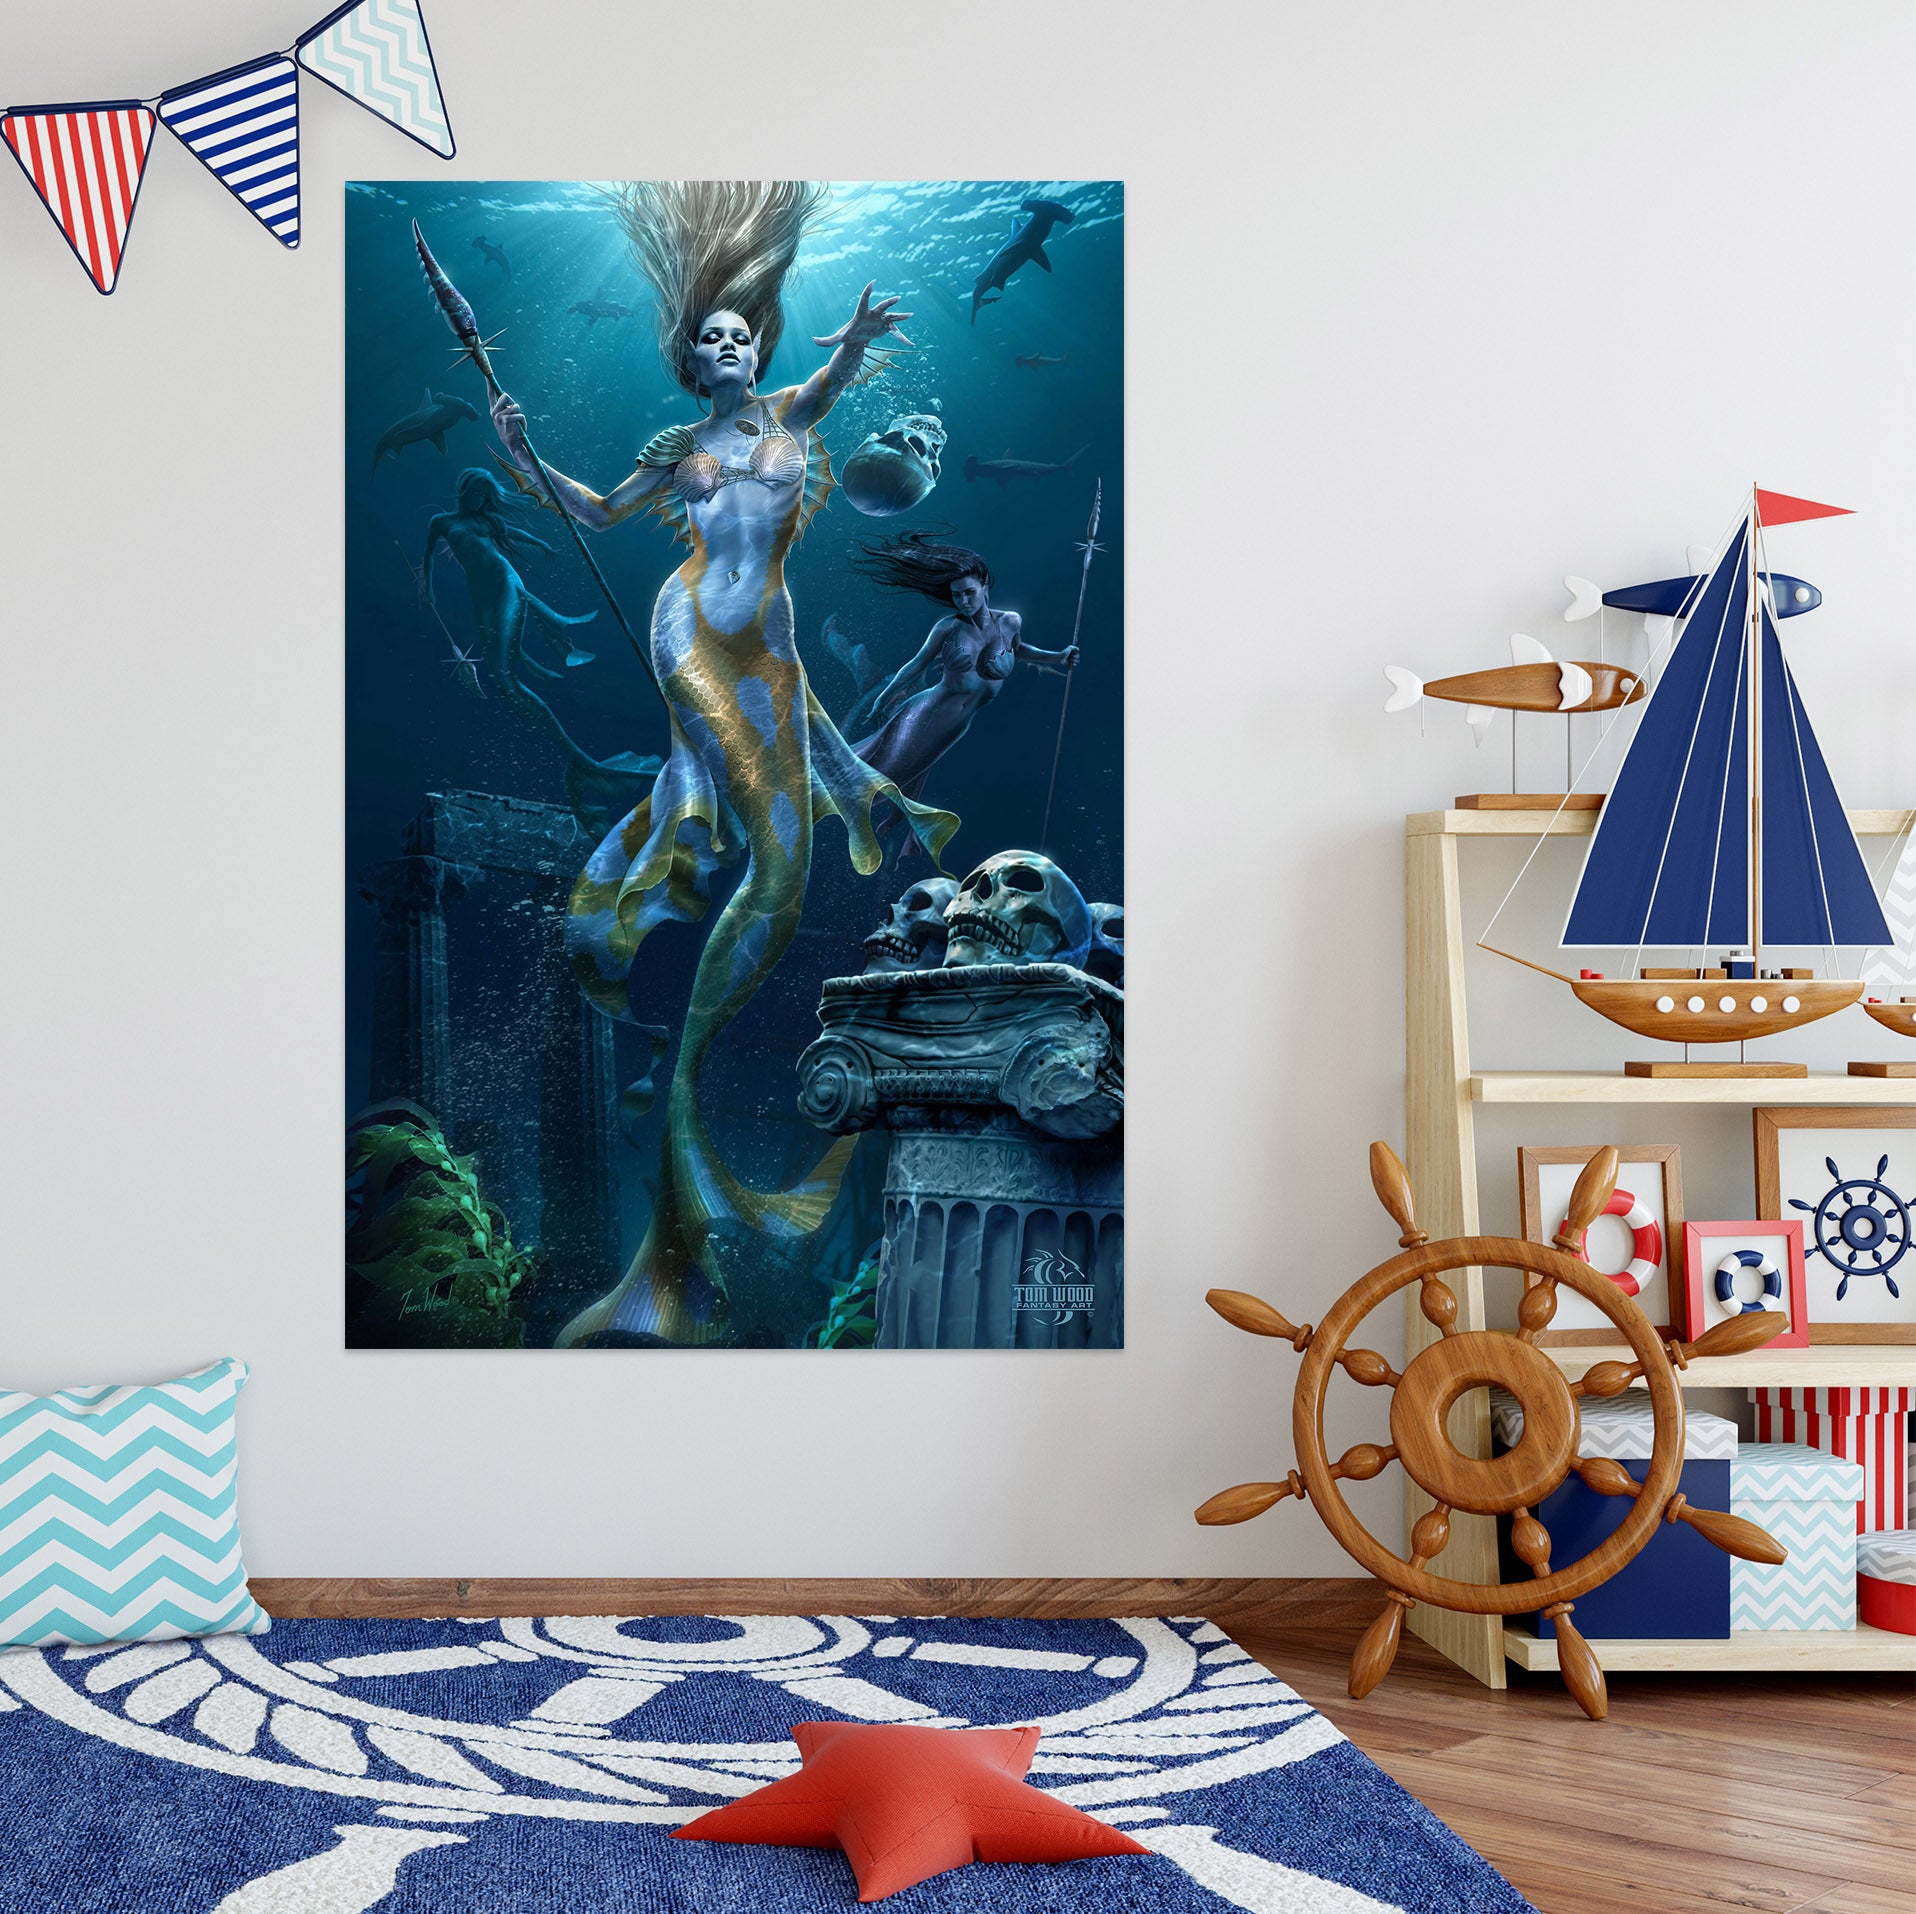 3D Mermaid 5135 Tom Wood Wall Sticker